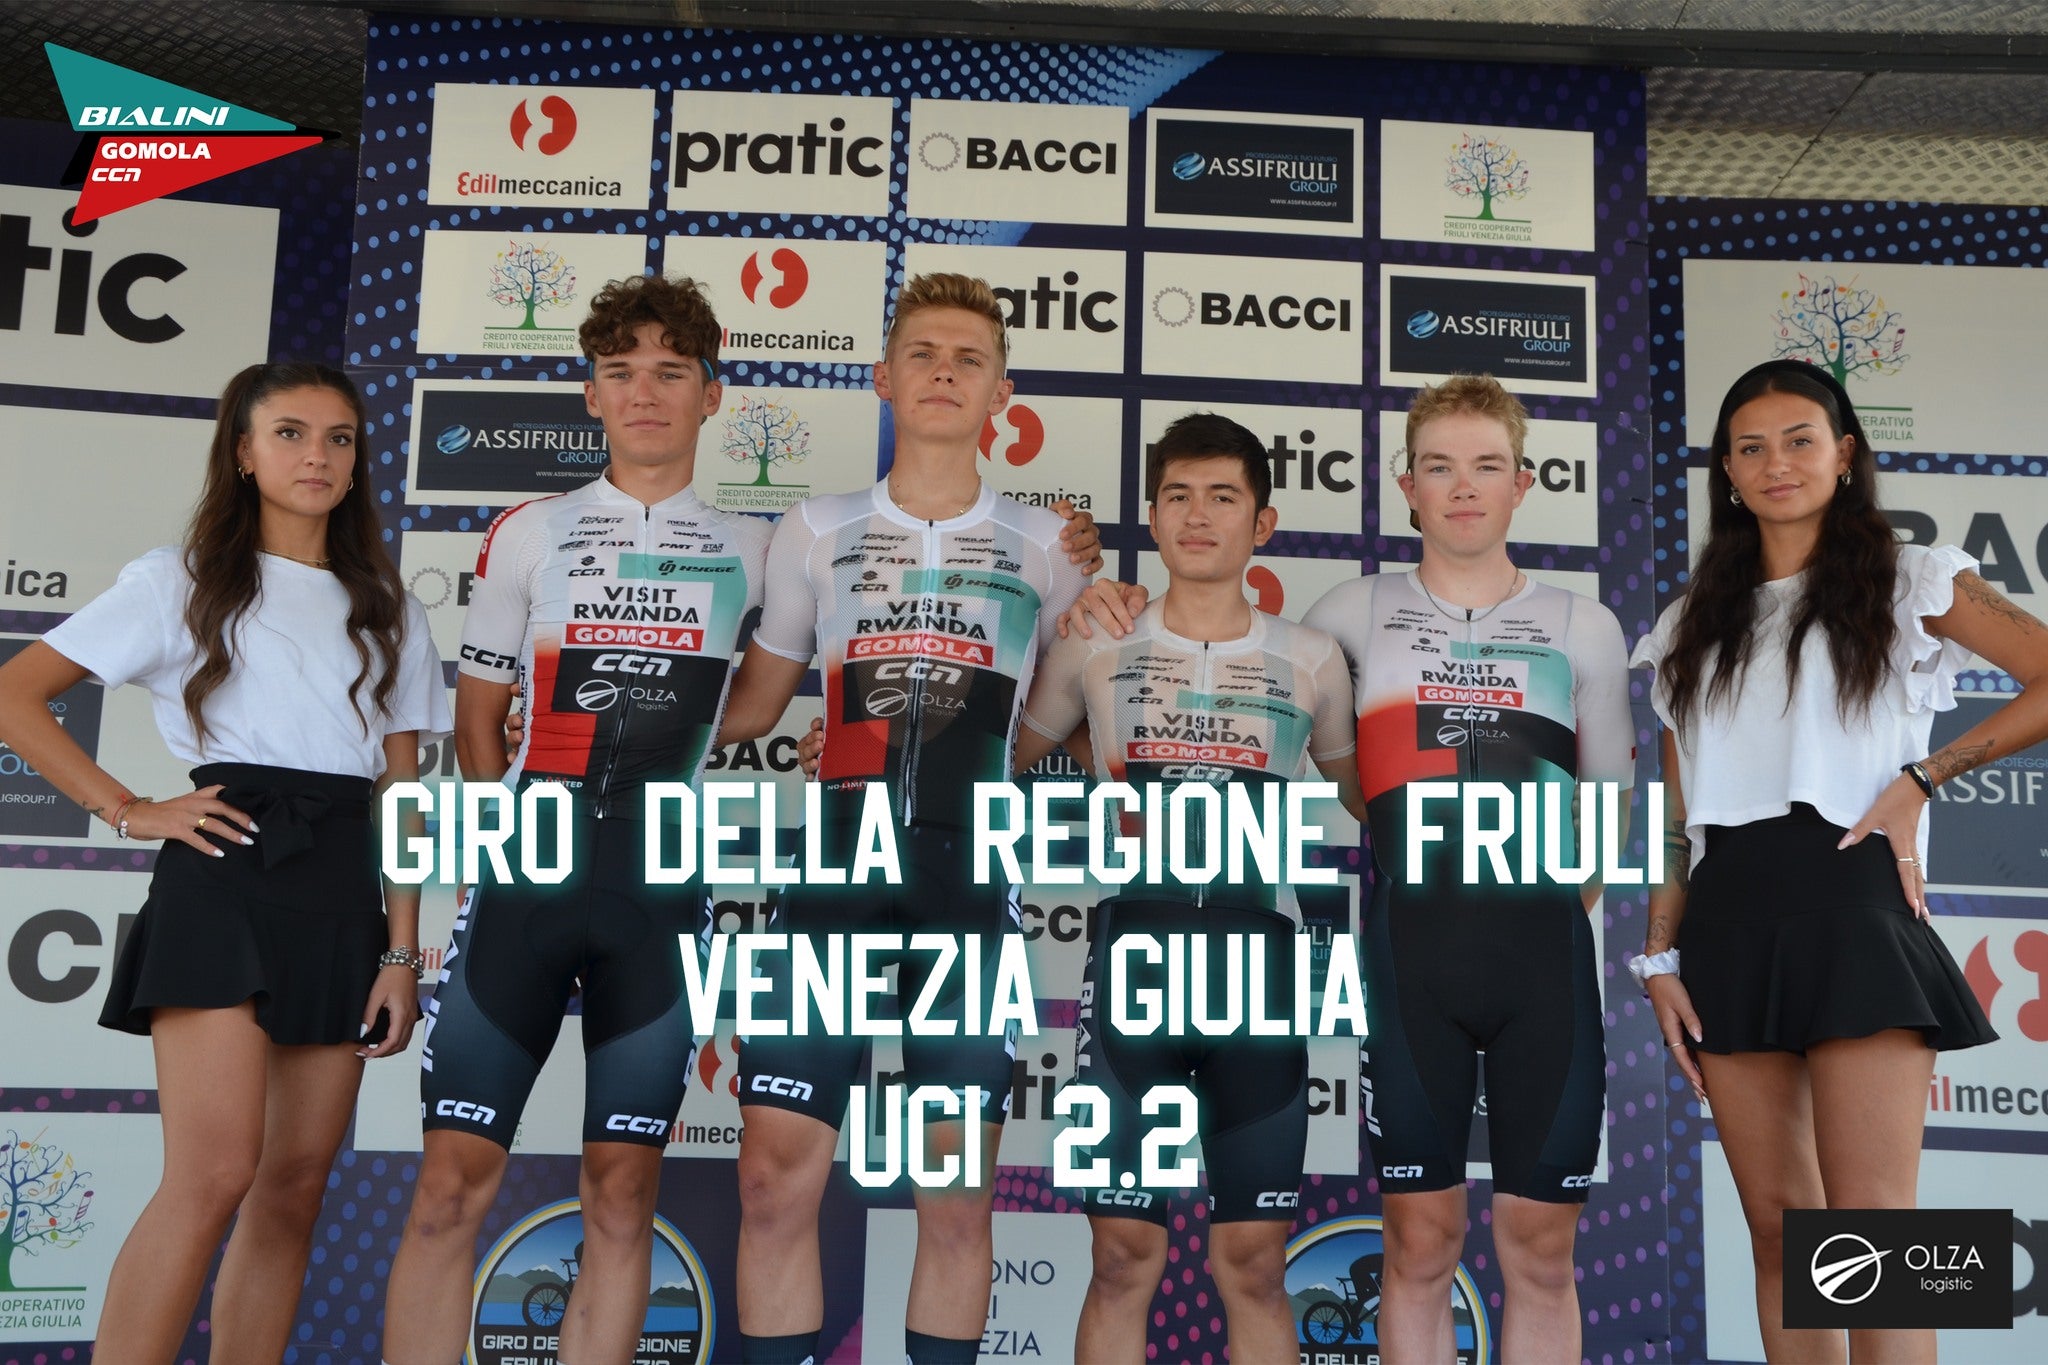 Bialini Gomola CCN Sport at the UCI 2.2 Giro della Regione Friulli Venezia Giulia: A Journey of Grit and Determination